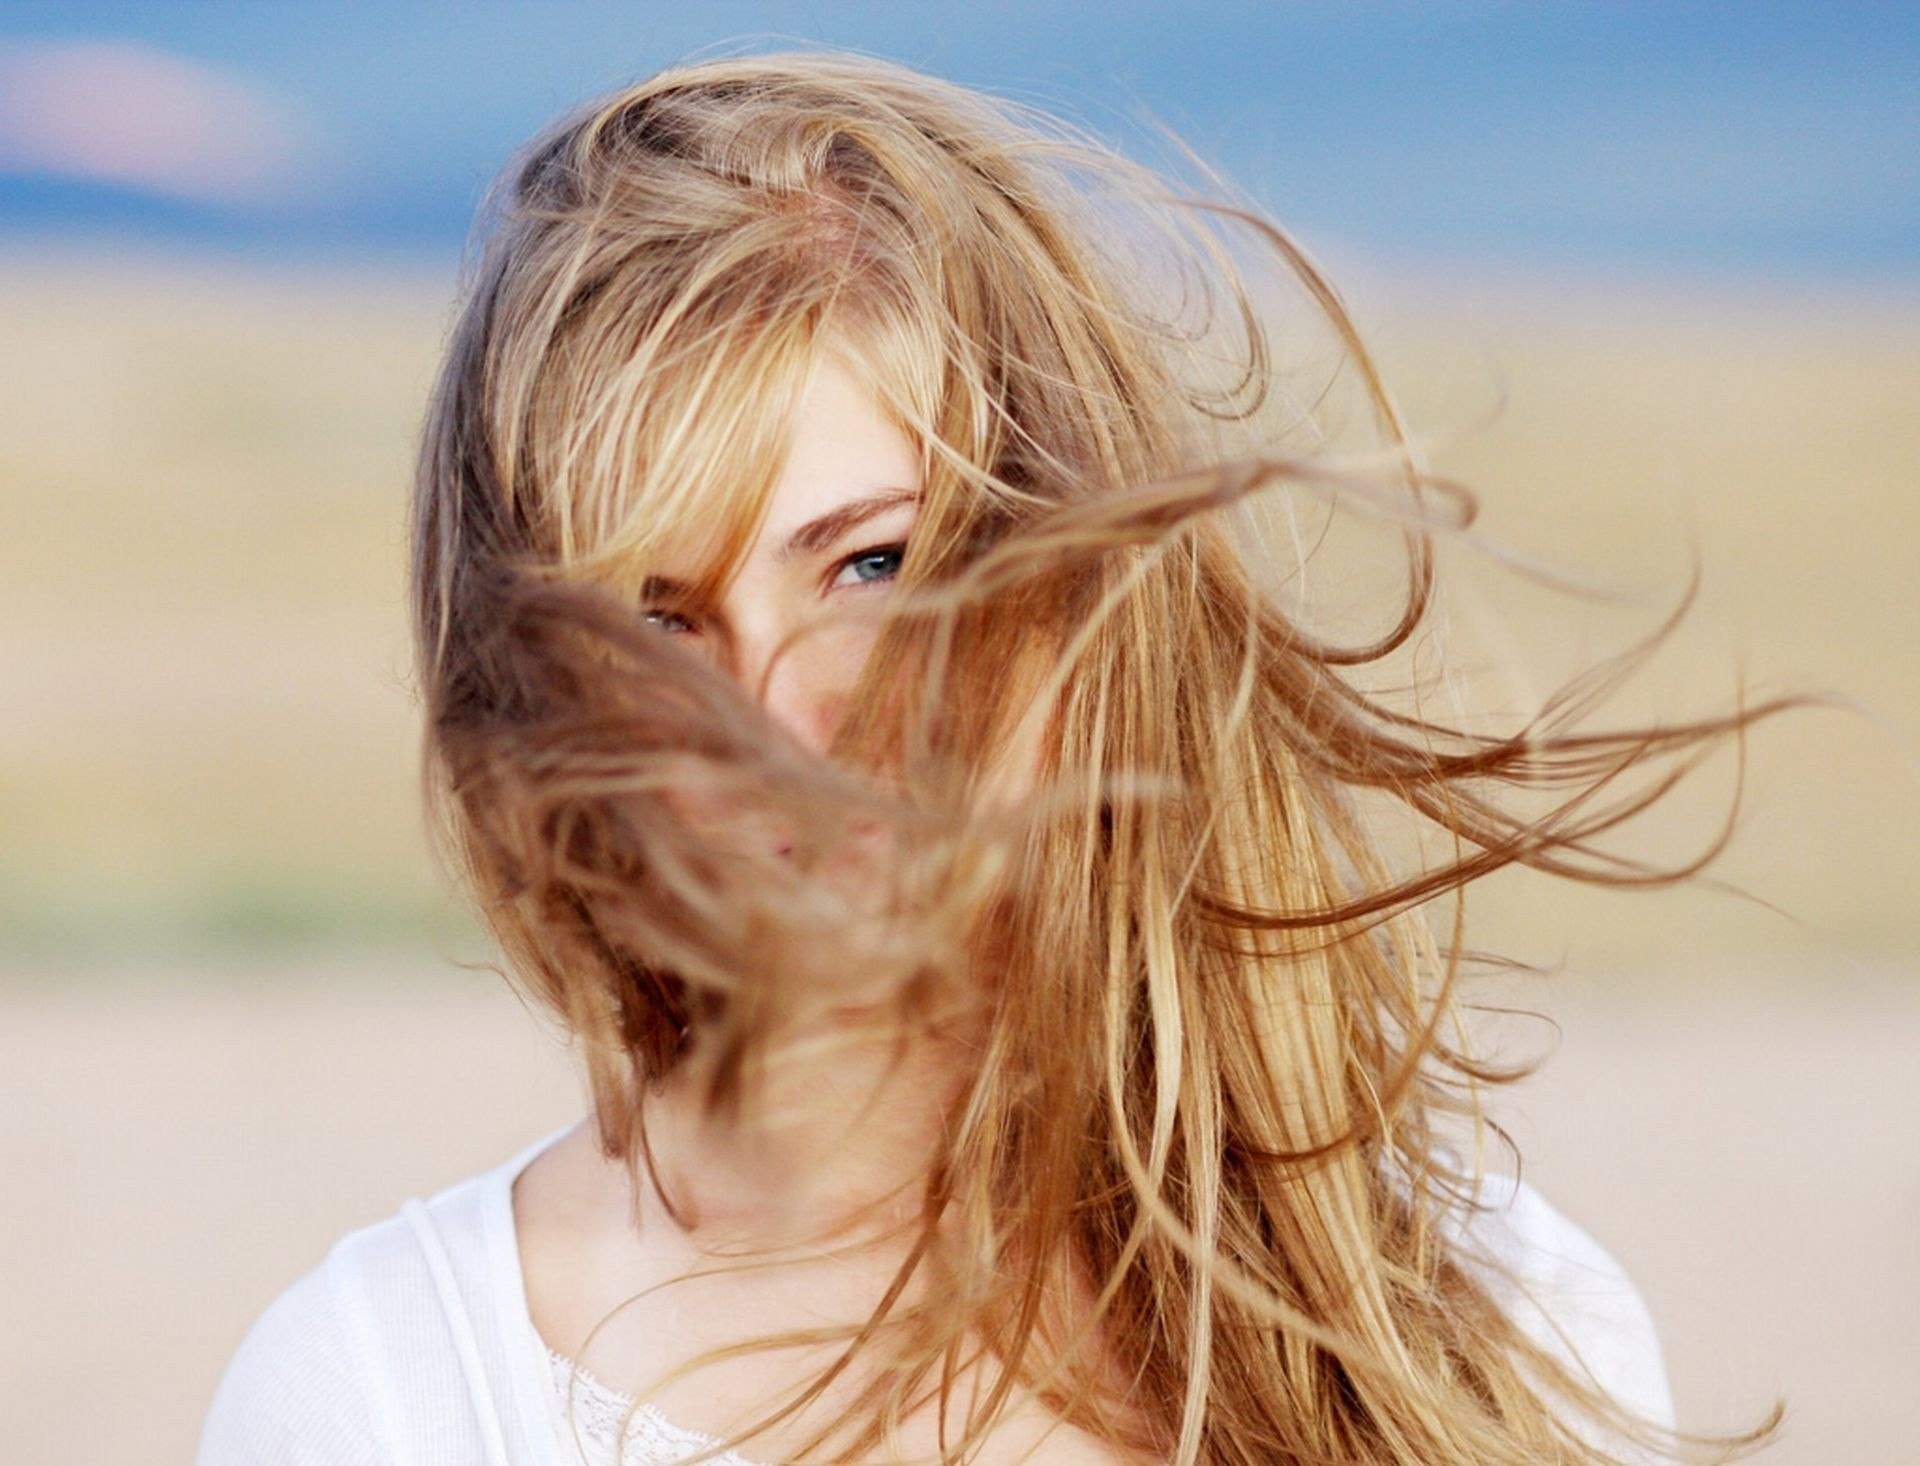 Видео светлый волос. Девушка с развевающимися волосами. Развивающиеся волосы. Девушка волосы на ветру. Девушка с распущенными волосами на ветру.